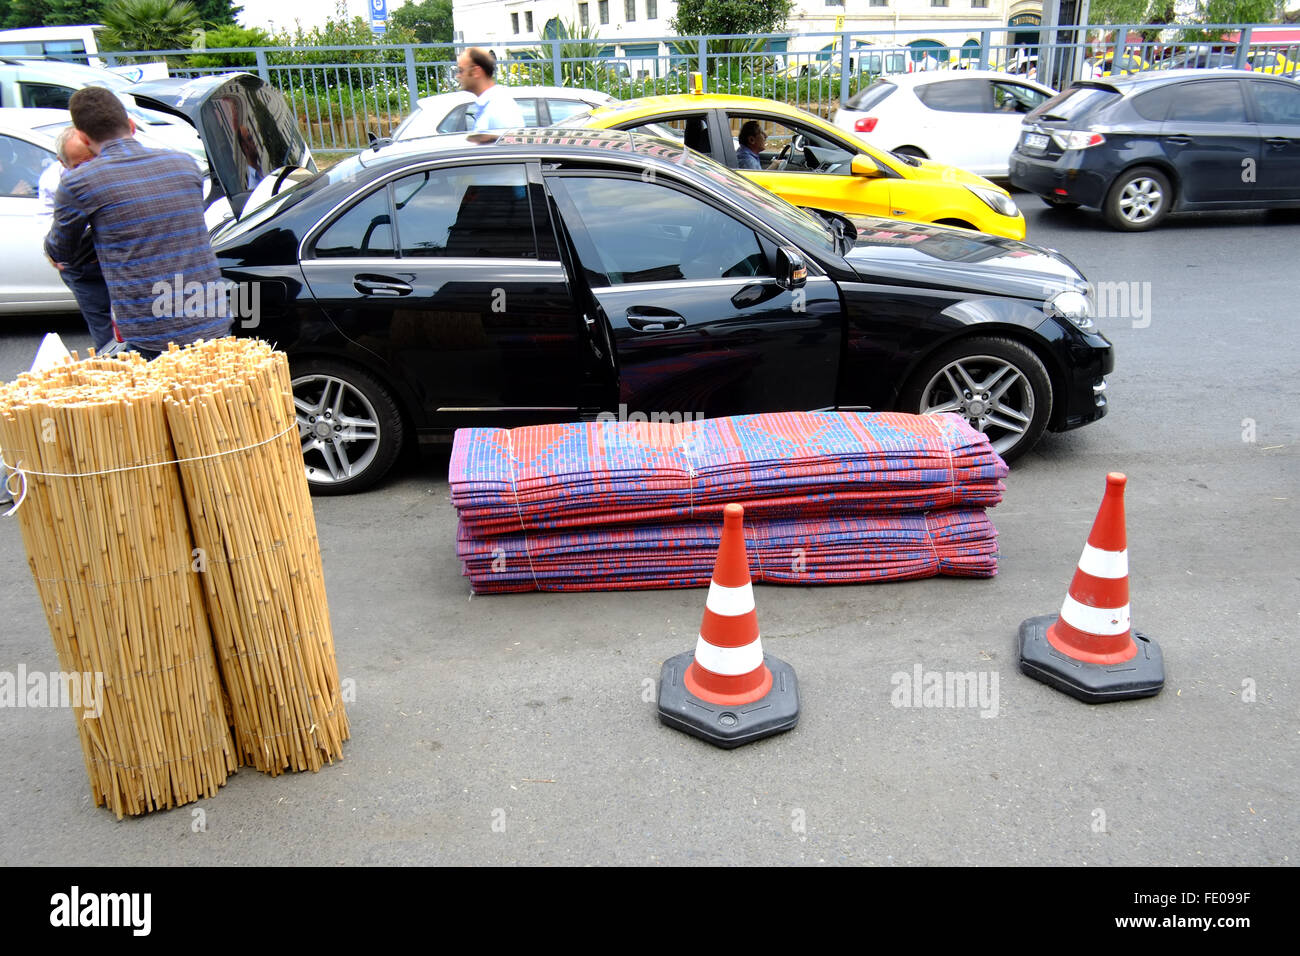 'Istanbul Turchia - Luglio 18,2014: persone ricche automobile parcheggiata di fronte ad un basso costo negozio di tappeti ad Istanbul in Turchia" Foto Stock